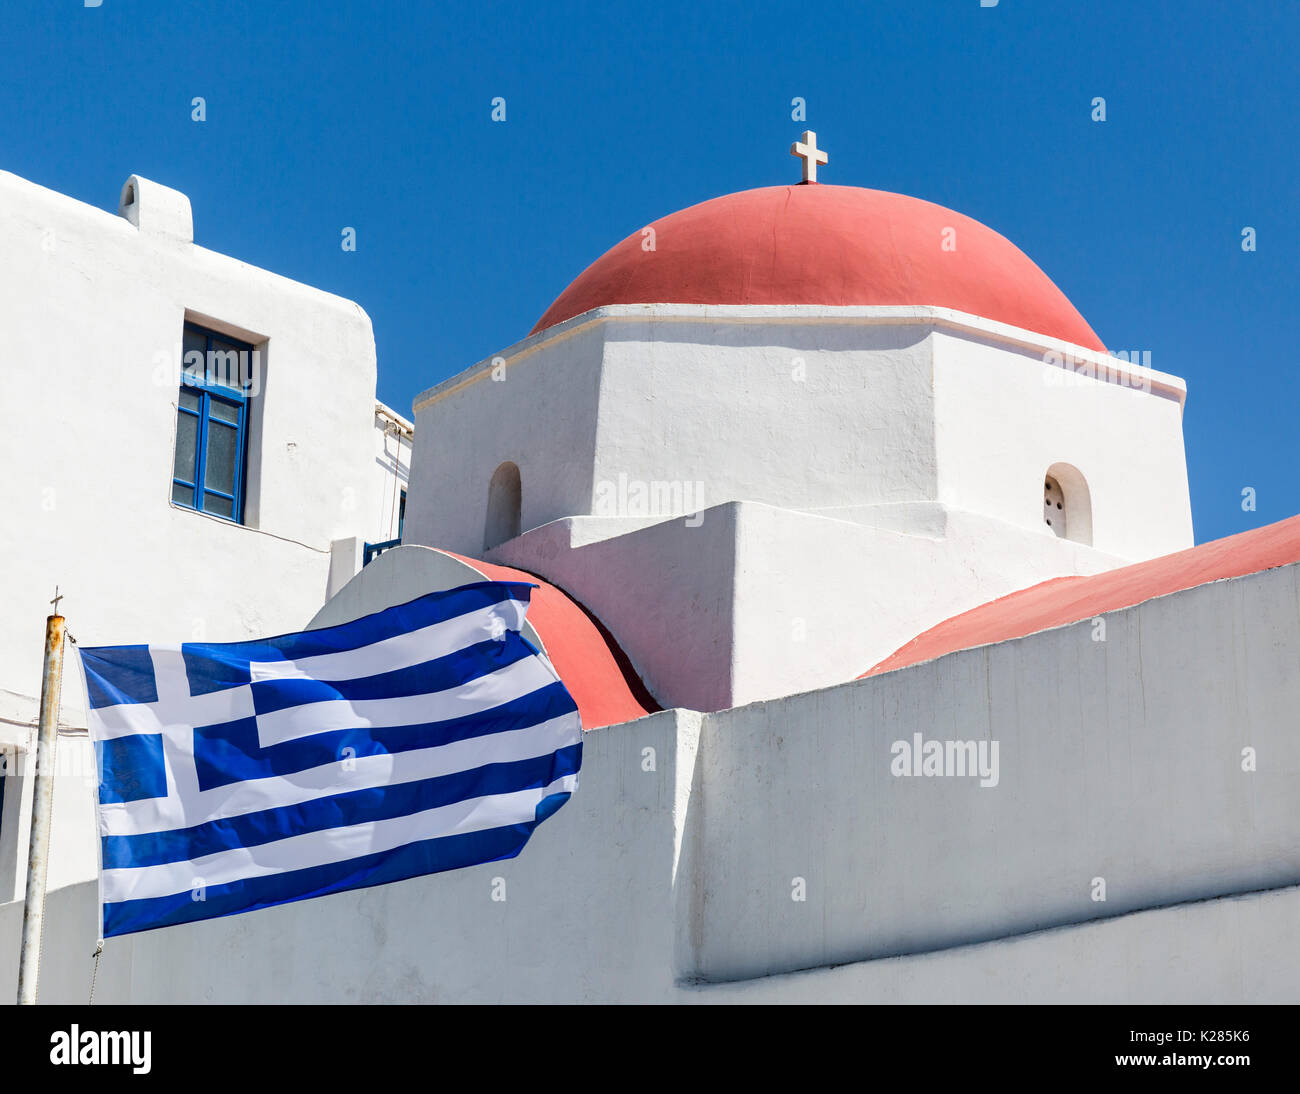 L'église grecque orthodoxe avec le dôme du pavillon national grec, Mykonos, Grèce. Banque D'Images